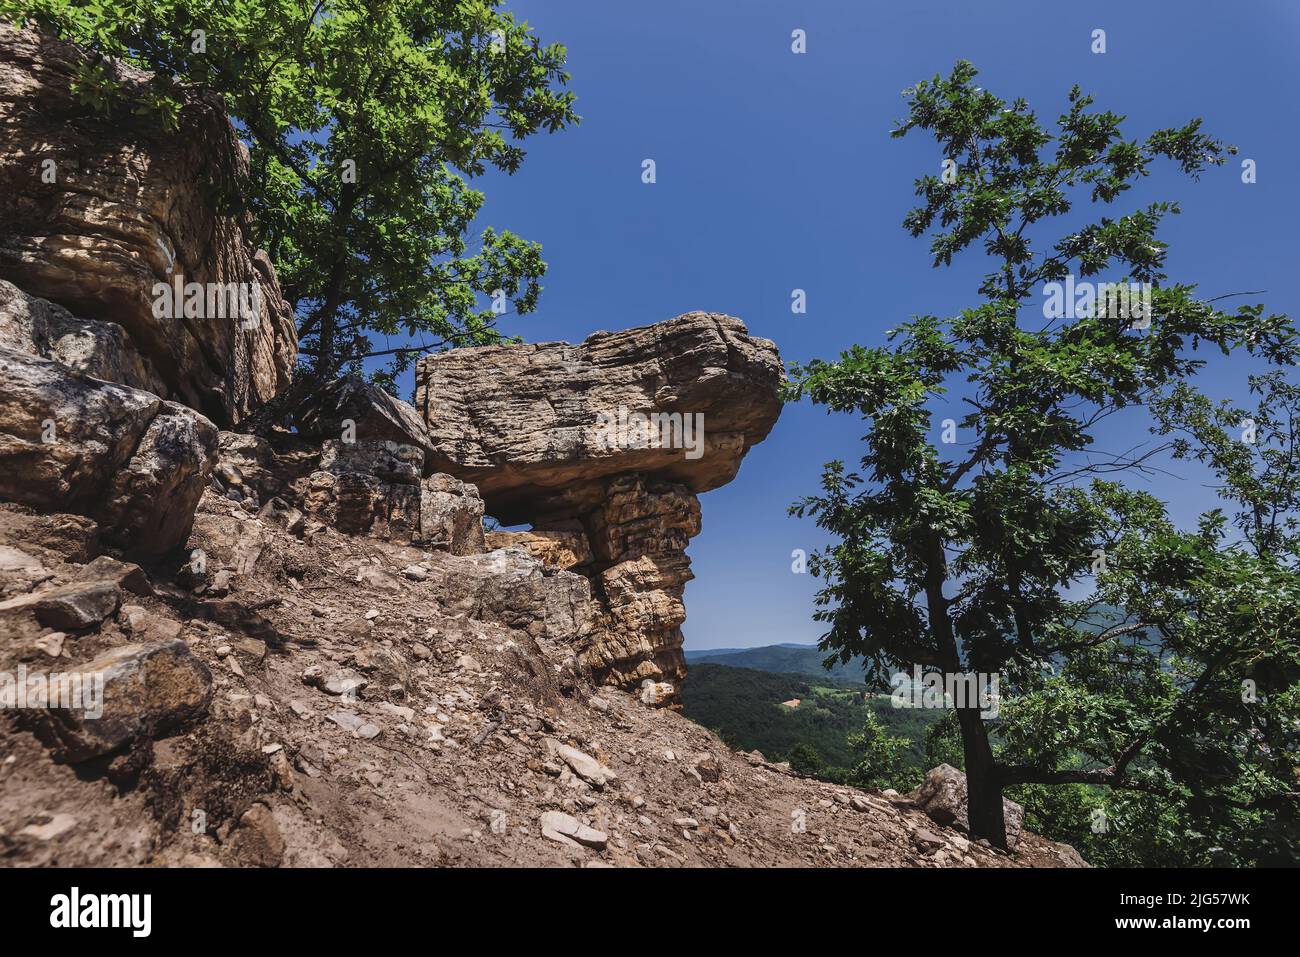 Gospodarev Kamen Natural Attraction in Serbia Stock Photo